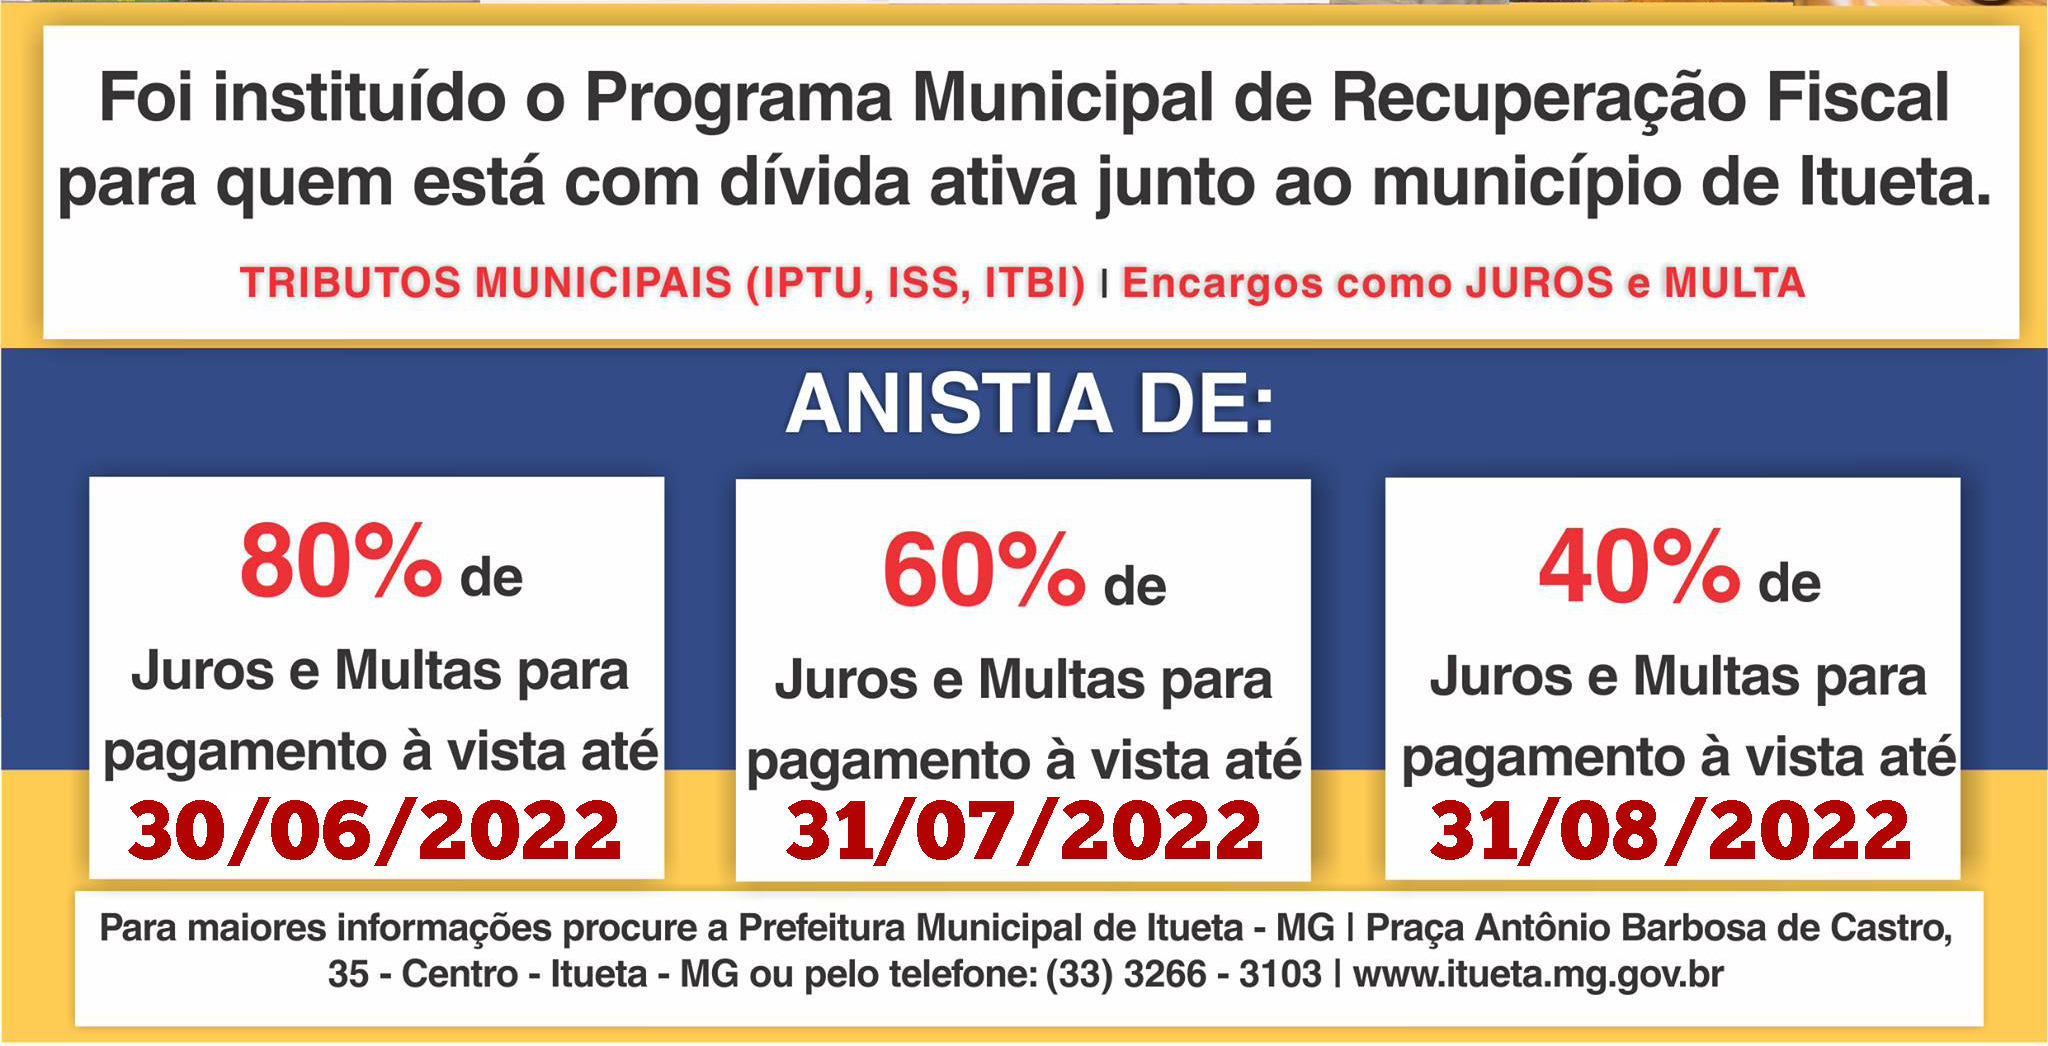 REFIS 2022 - Recuperação Fiscal do Município de Itueta